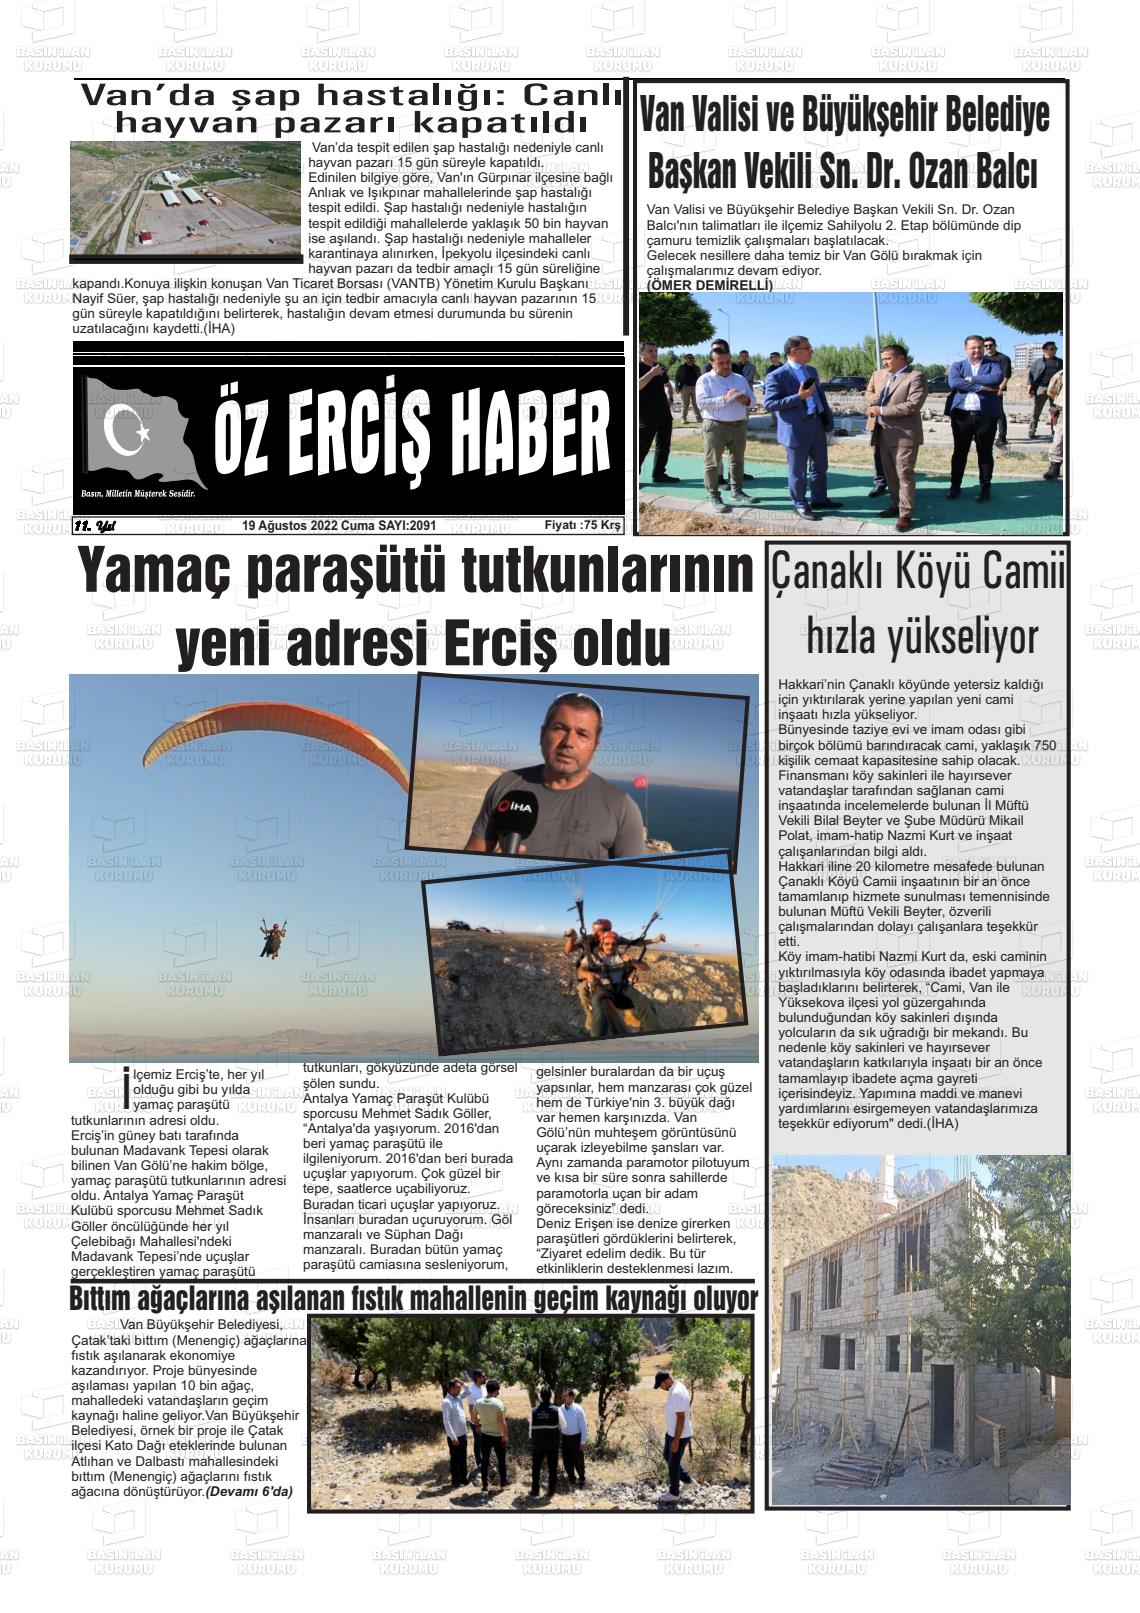 19 Ağustos 2022 Öz Erciş Haber Gazete Manşeti